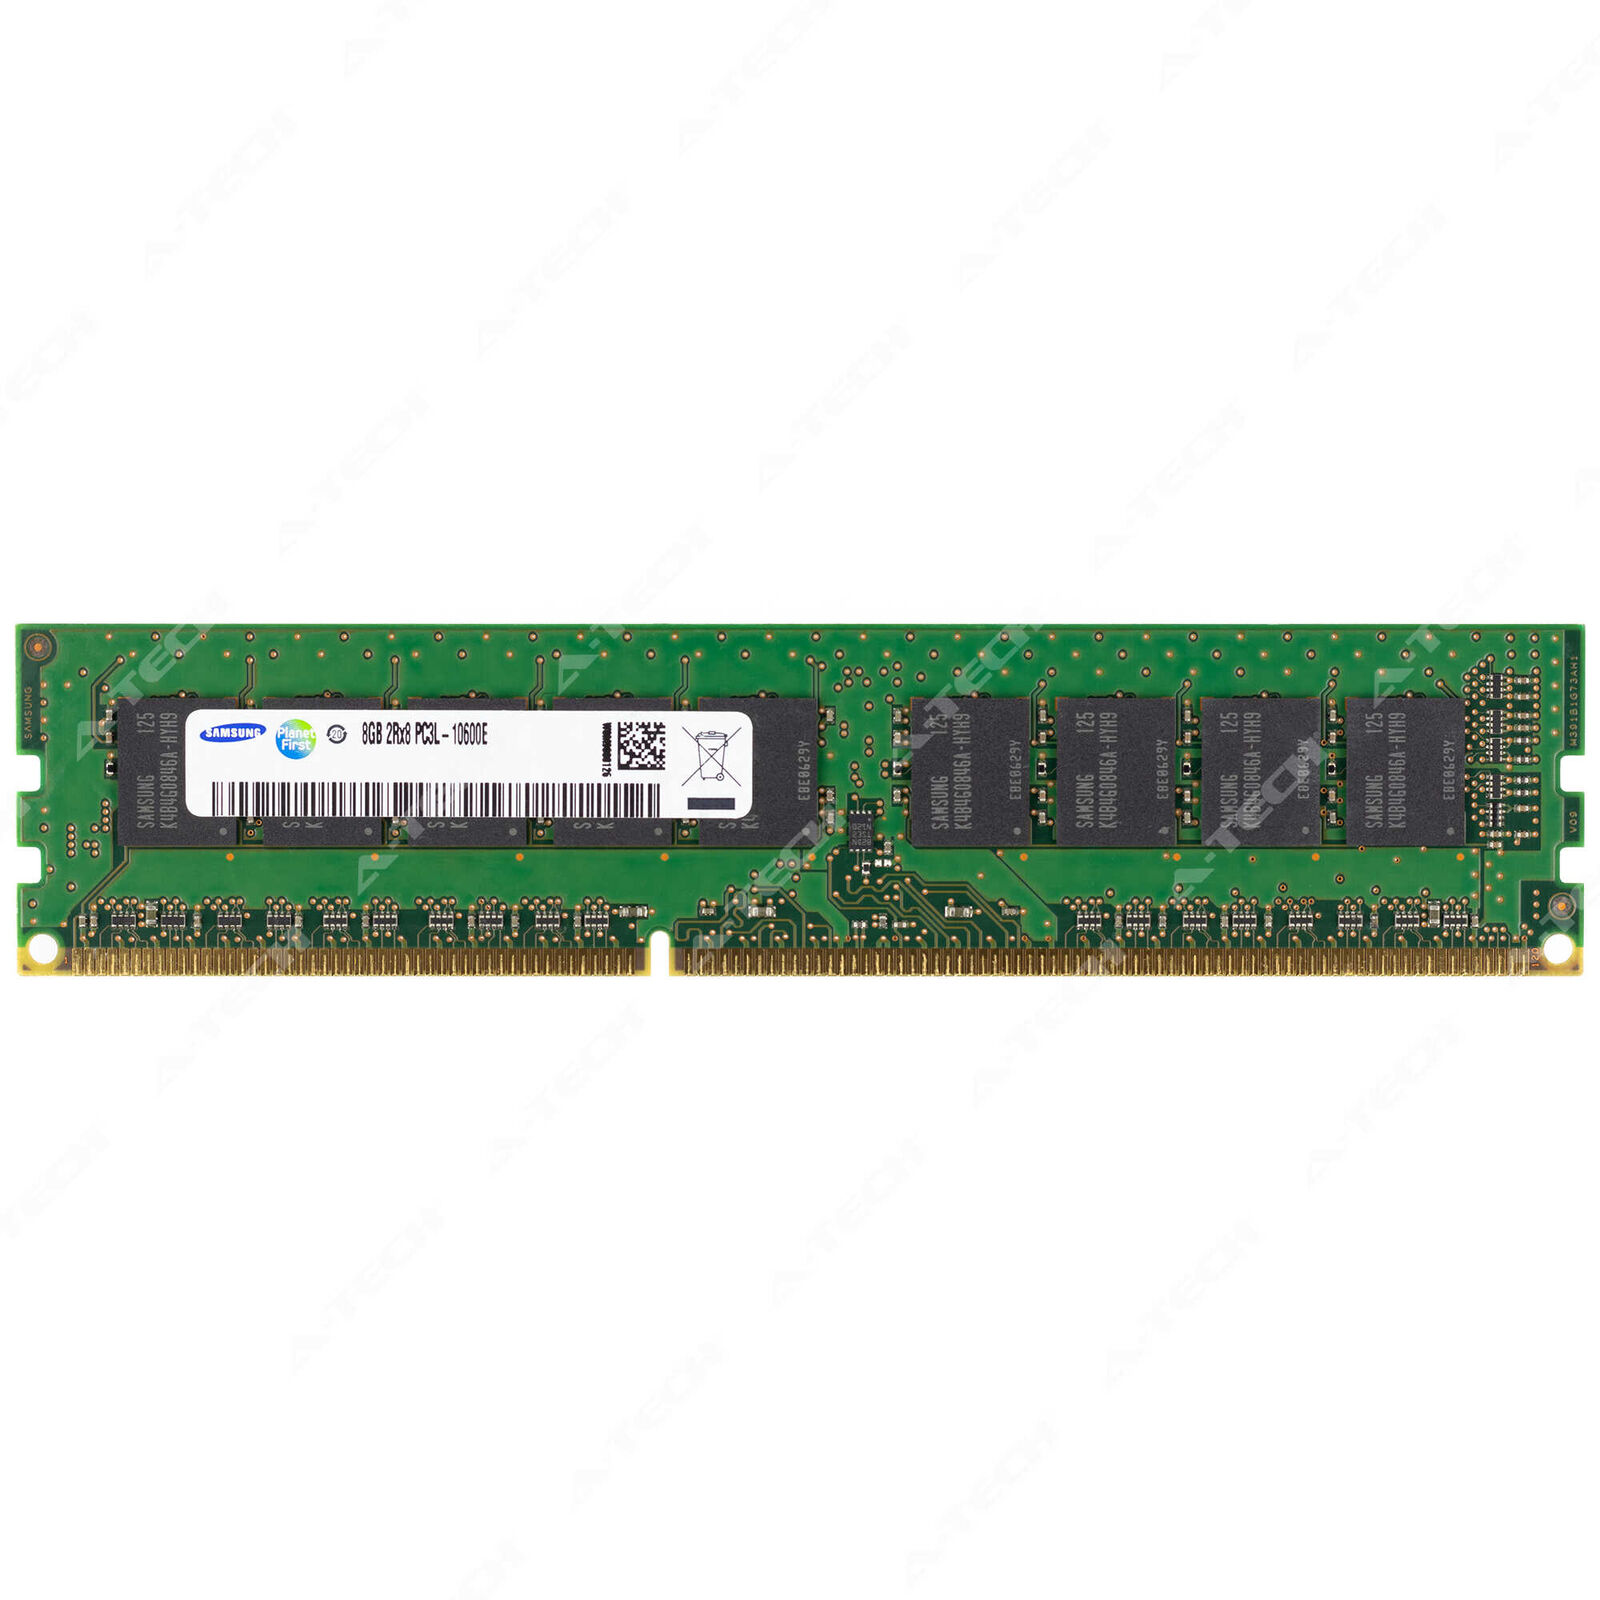 Samsung 8GB 2Rx8 PC3L-10600 ECC UDIMM DDR3L 1333MHz Unbuffered Server Memory RAM